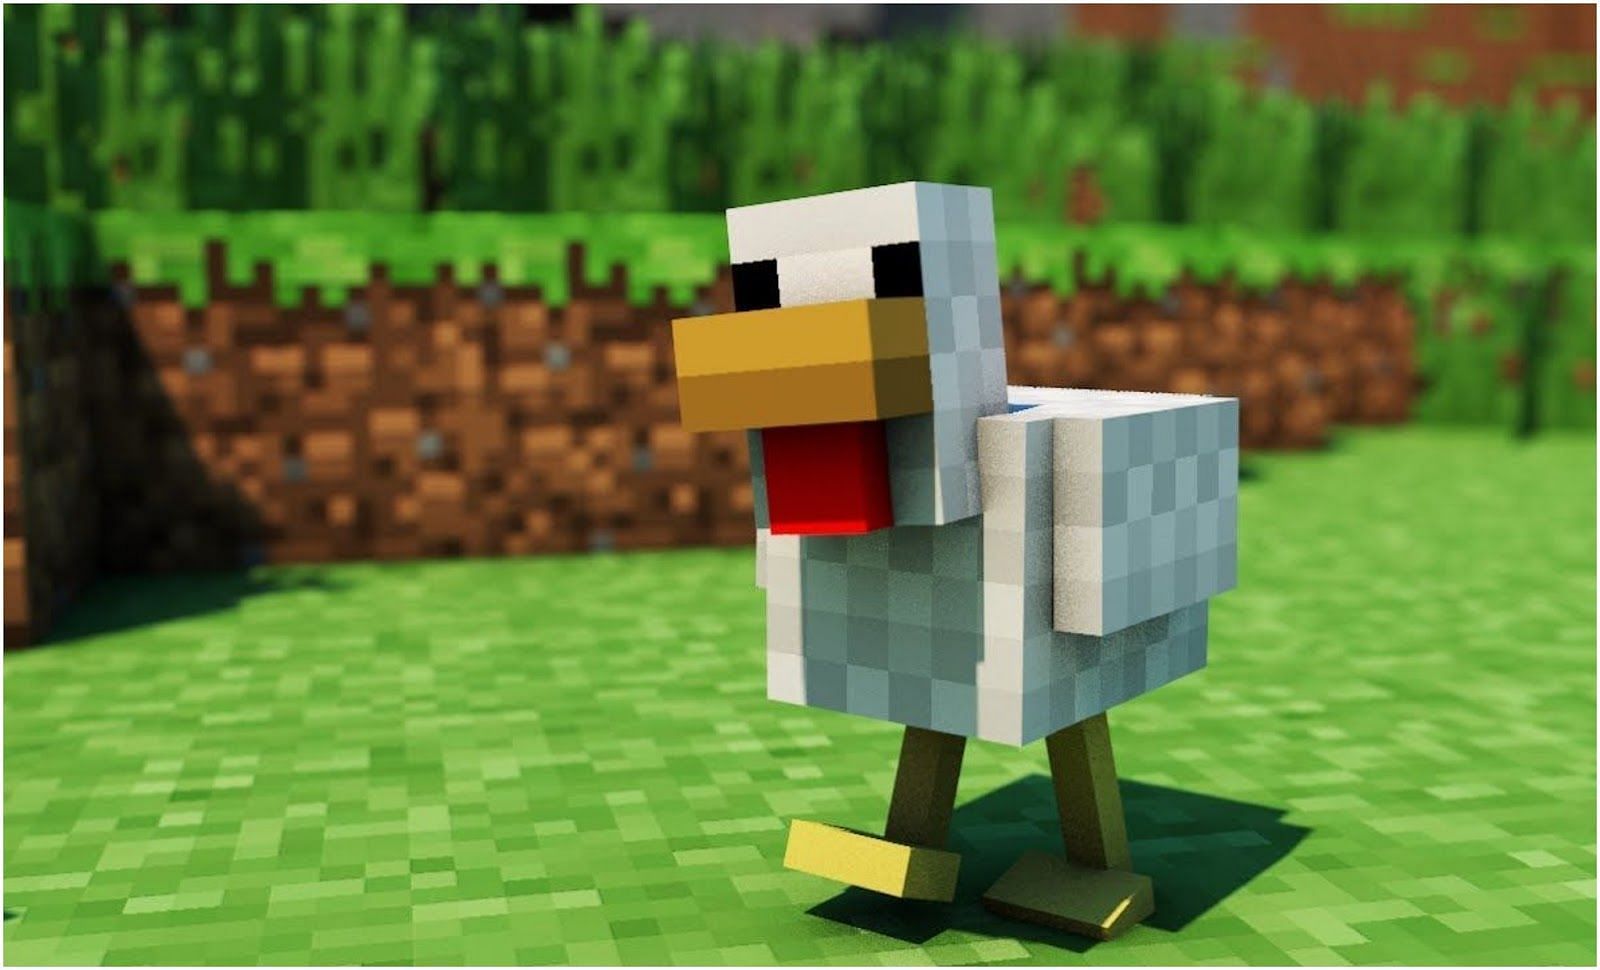 A Chicken in Minecraft (Image via WallpaperDog/Minecraft)